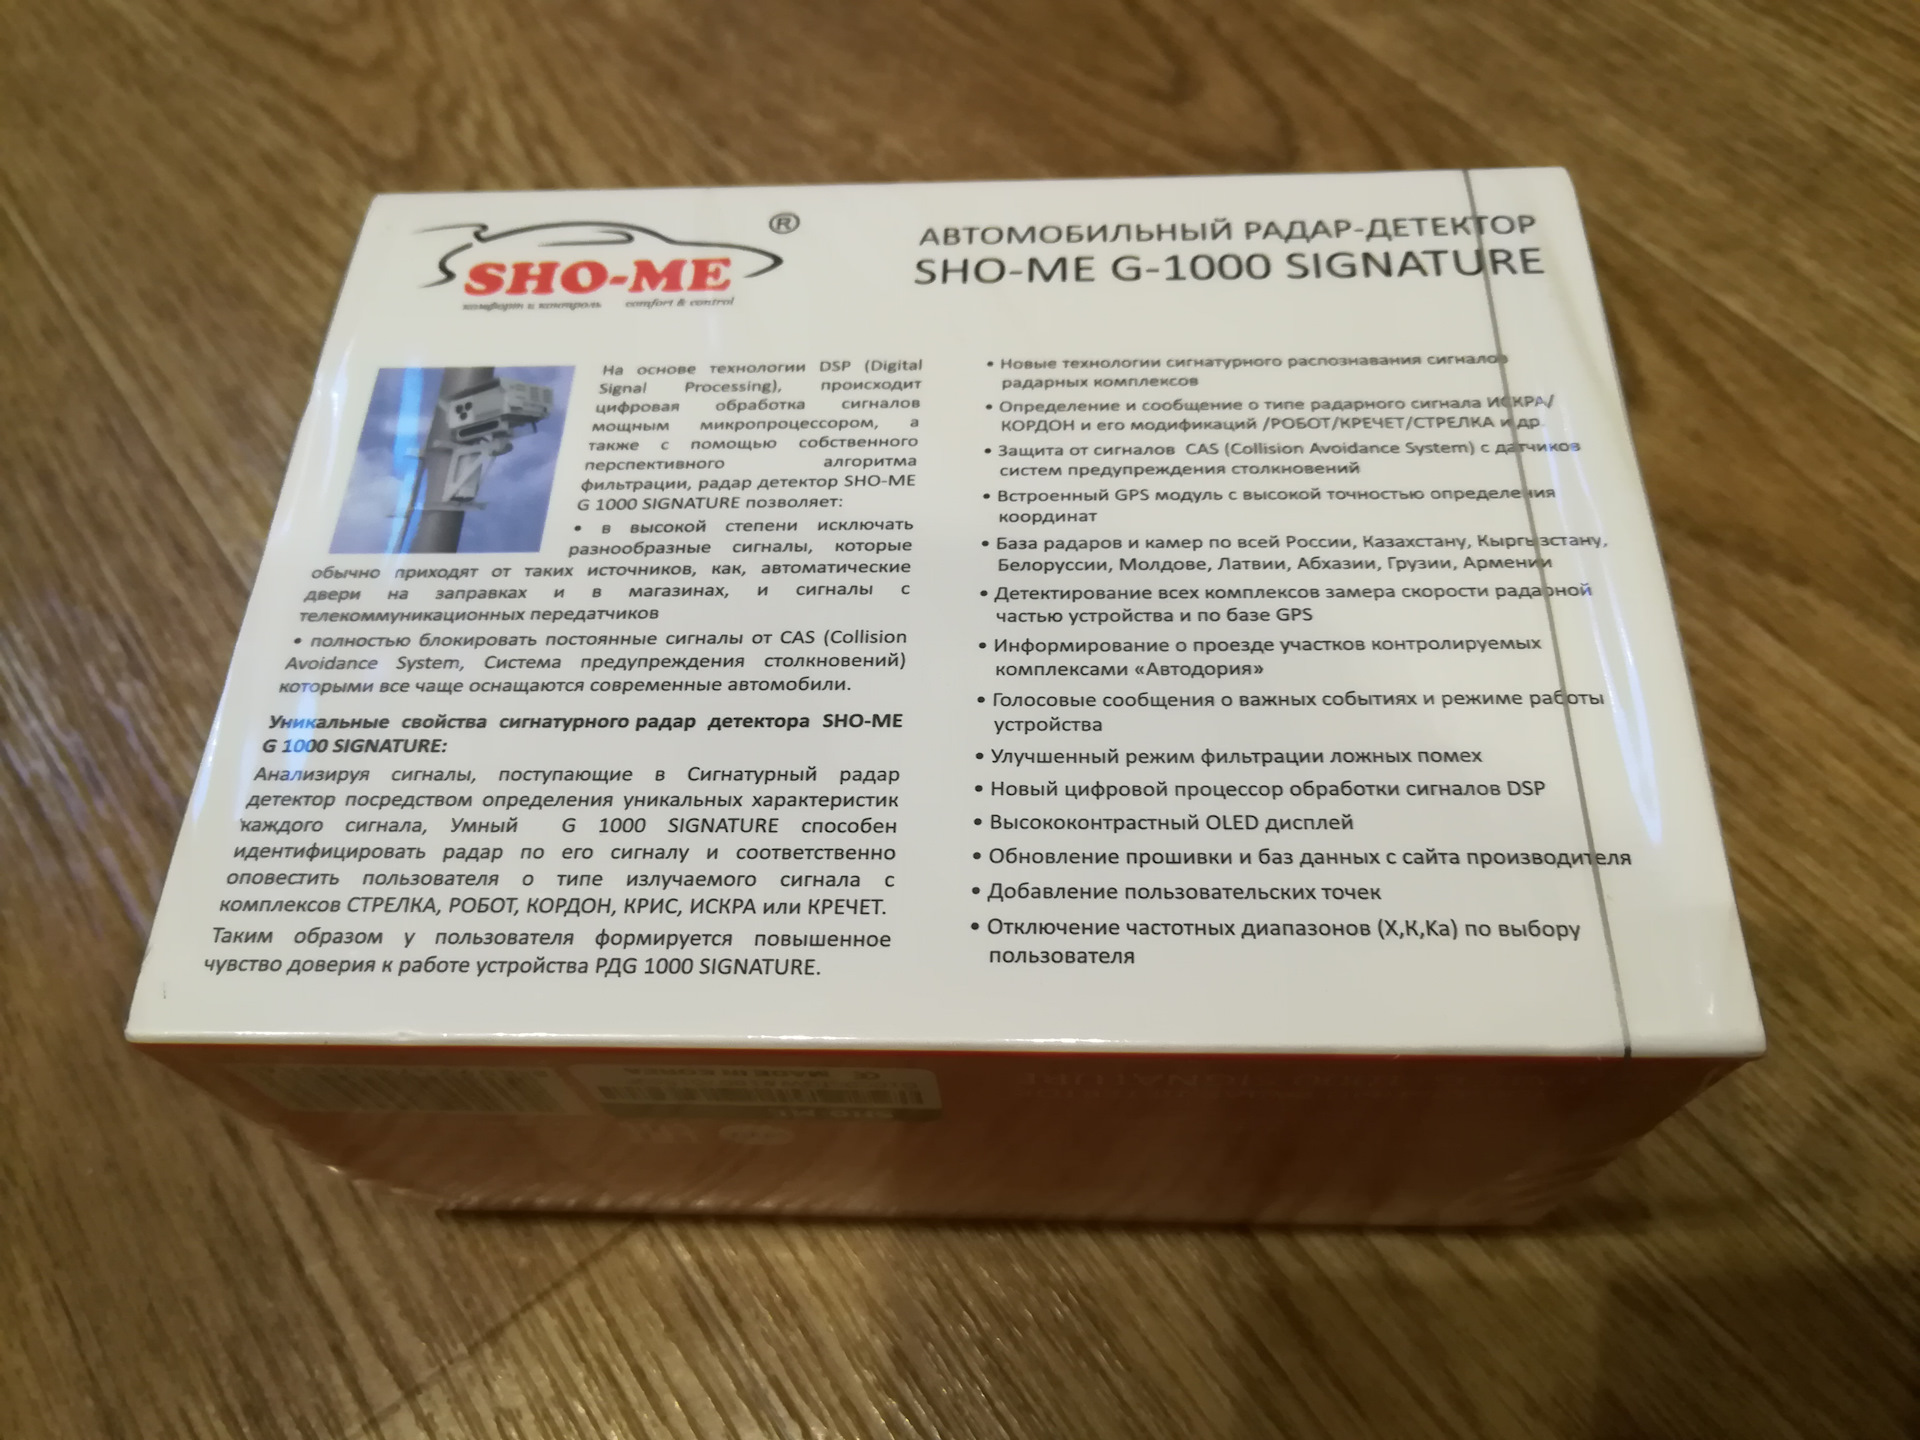 Характеристика sho me. Sho-me g-1000 Signature плата м антенной. Sho-me g-1000 Signature как определить серийный номер. Радар-детектор Sho-me g-1000 Signature как установить. Sho-me g-1000 Signature как устроен внутри.